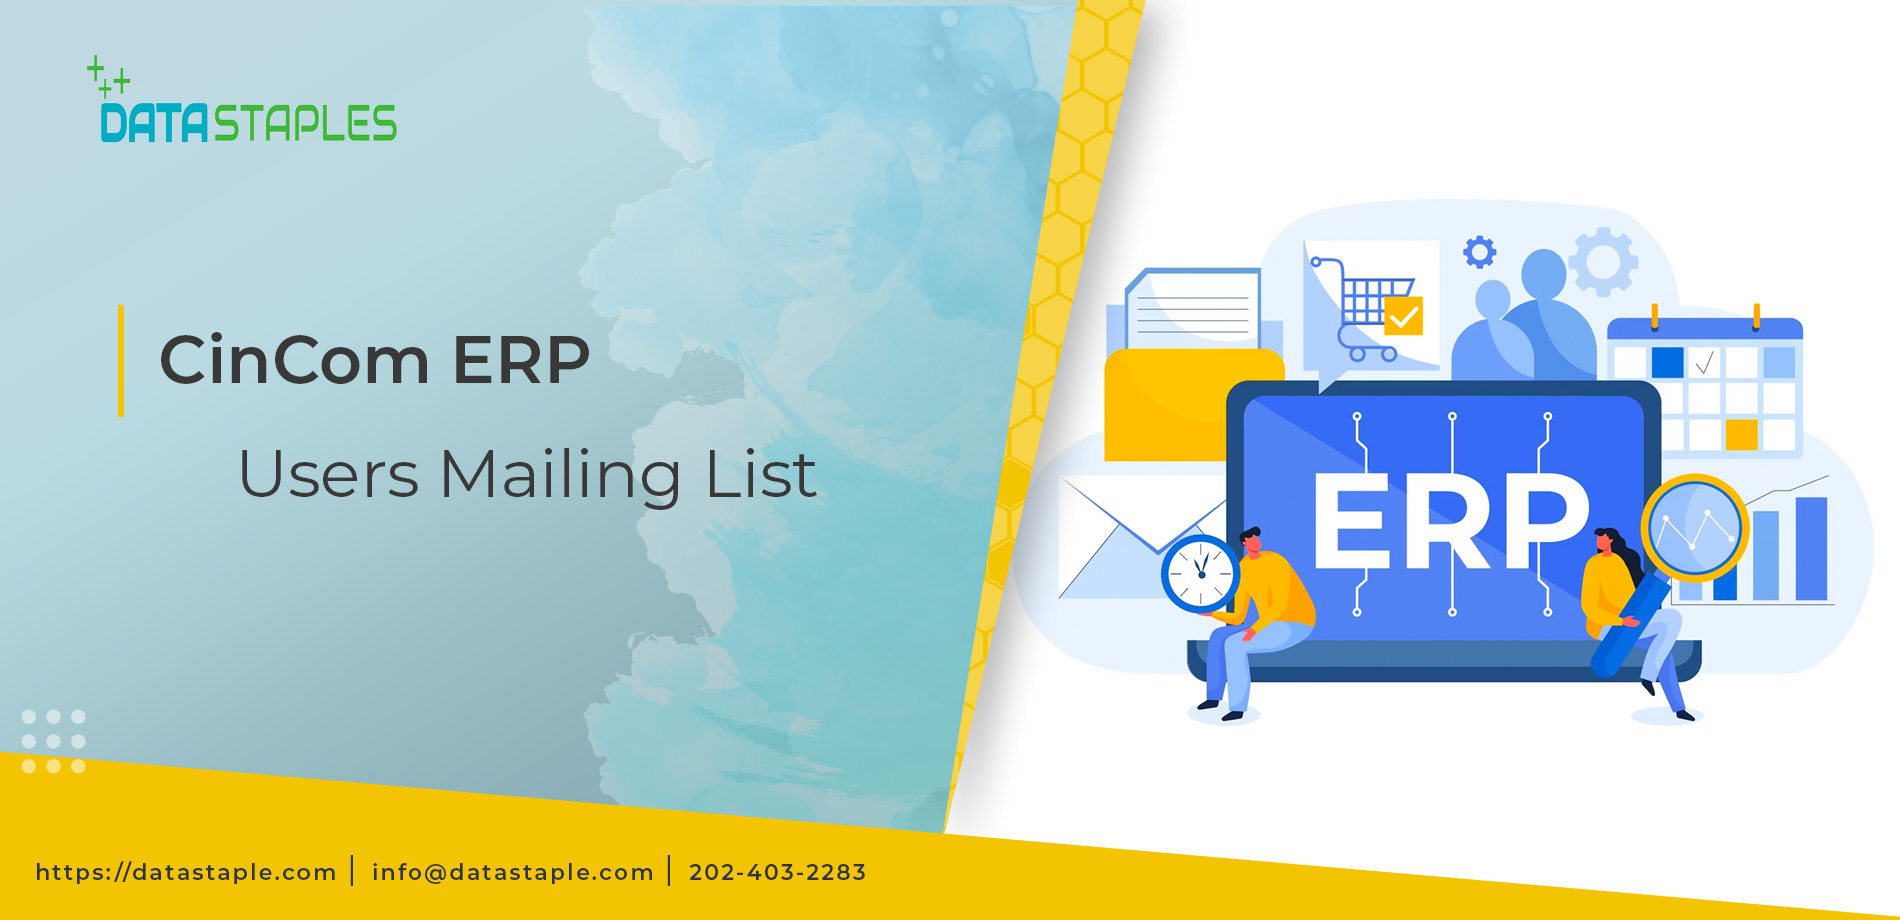 Cincom ERP Users List | Cincom ERP Users Mailing List